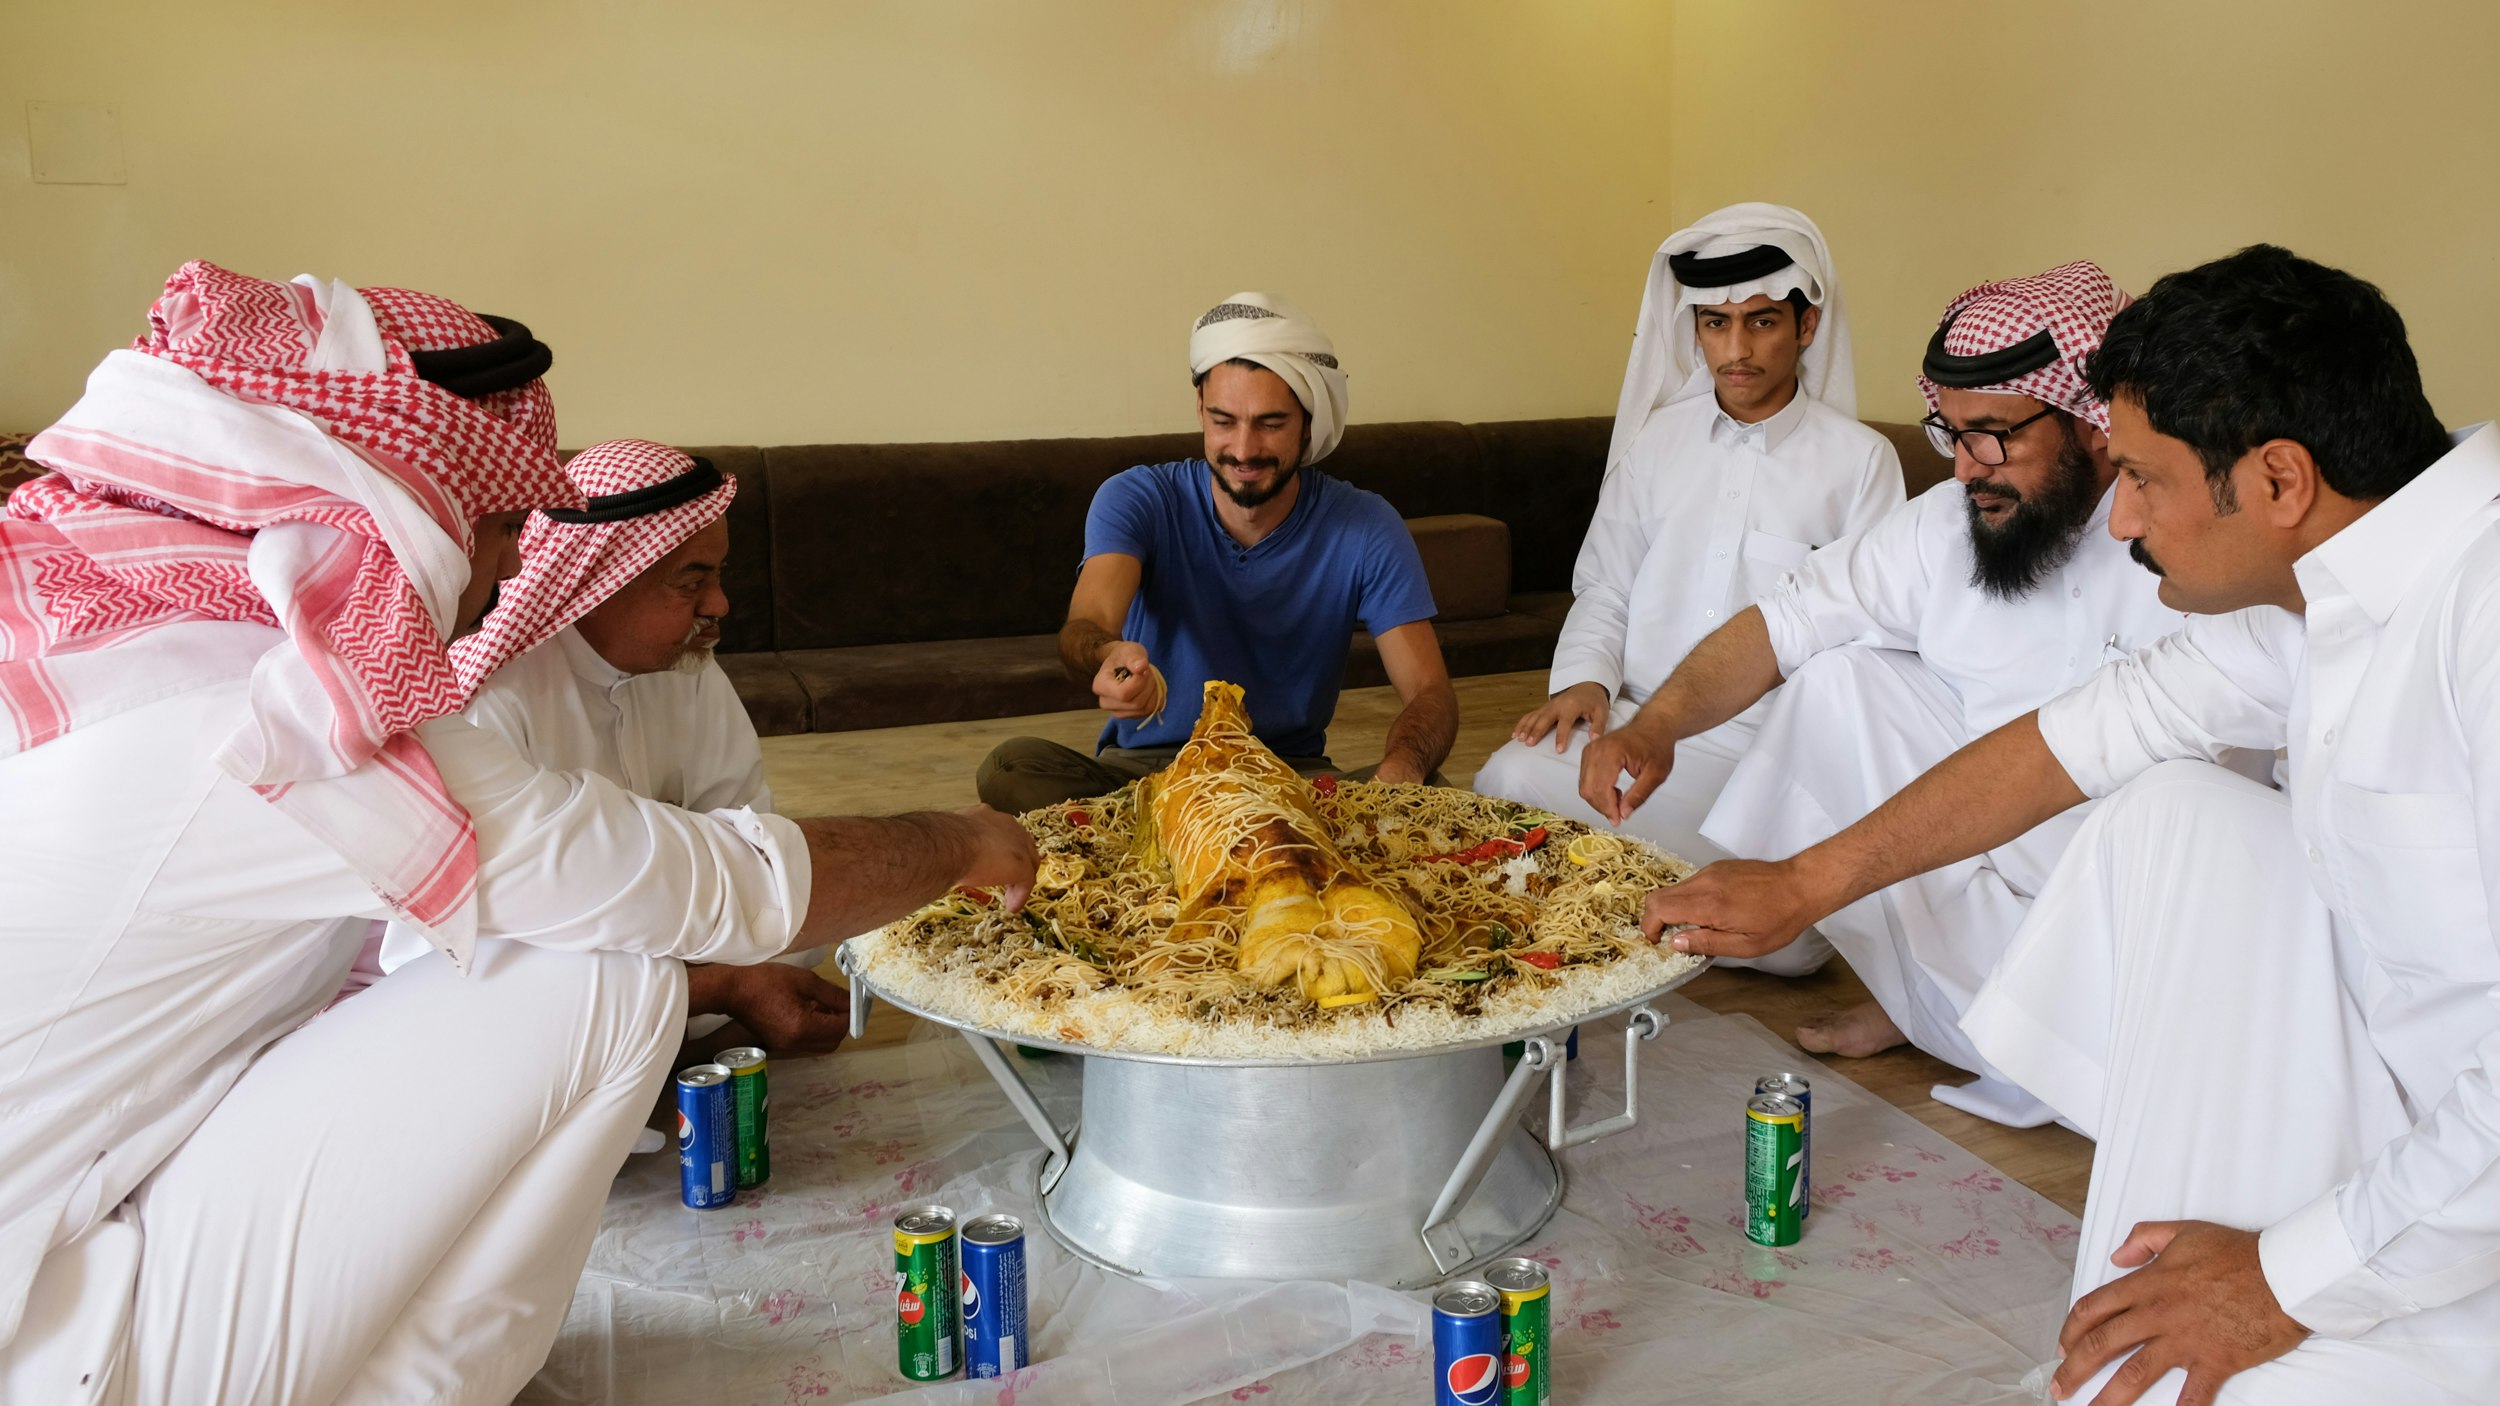 Eating a whole goat in Saudi Arabia